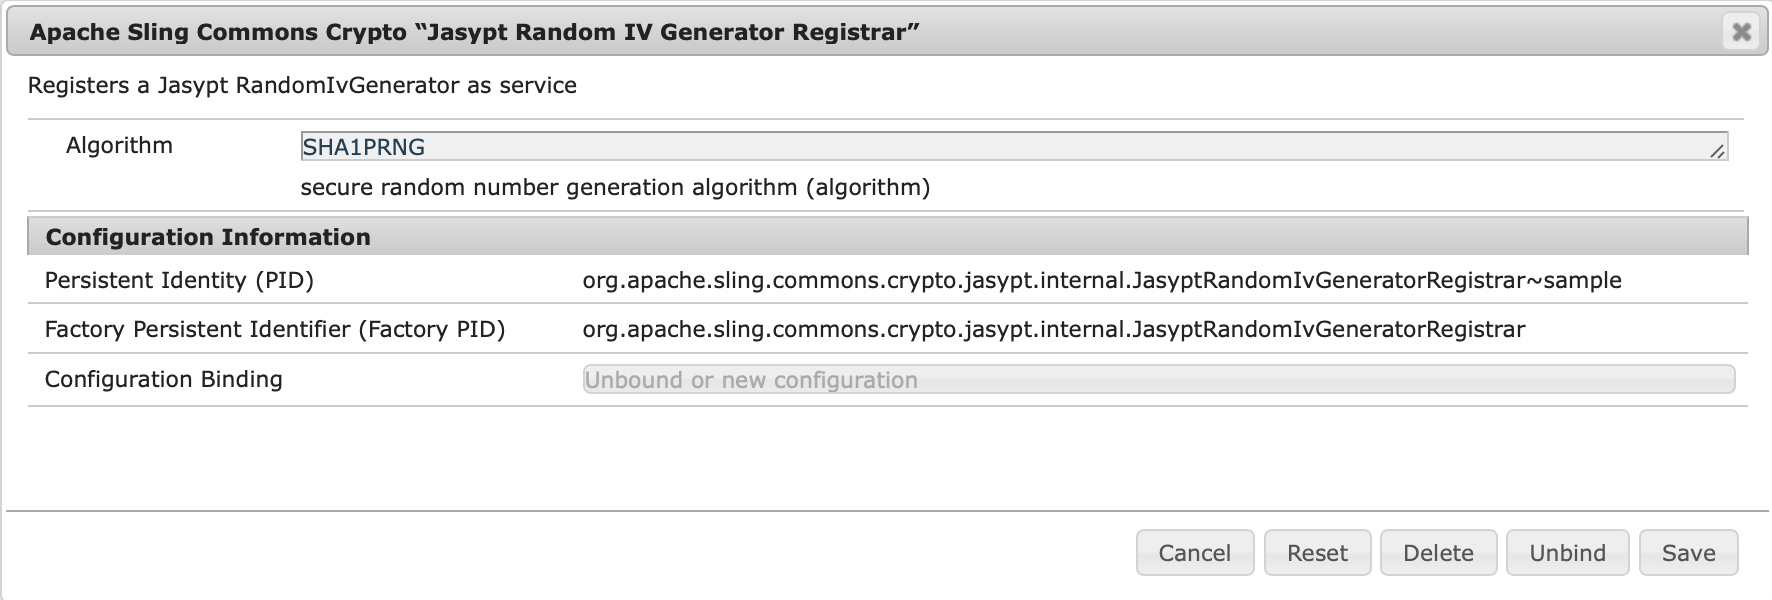 JasyptRandomIvGeneratorRegistrar Sample Configuration